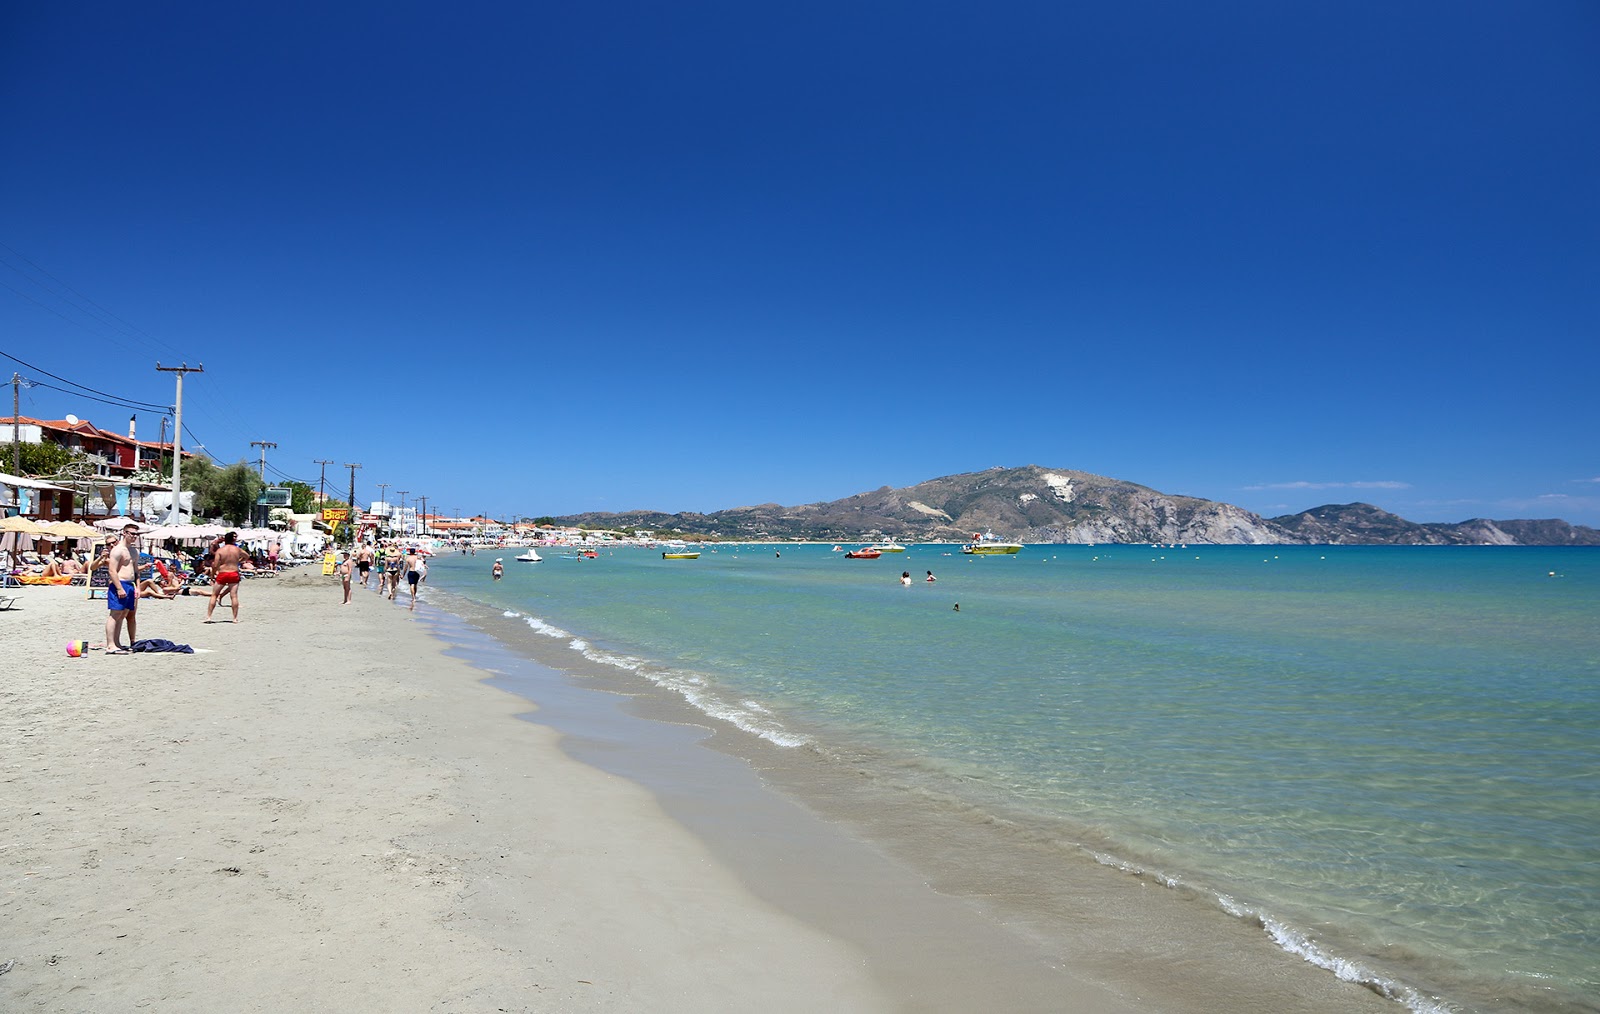 Laganas Plajı II'in fotoğrafı parlak kum yüzey ile